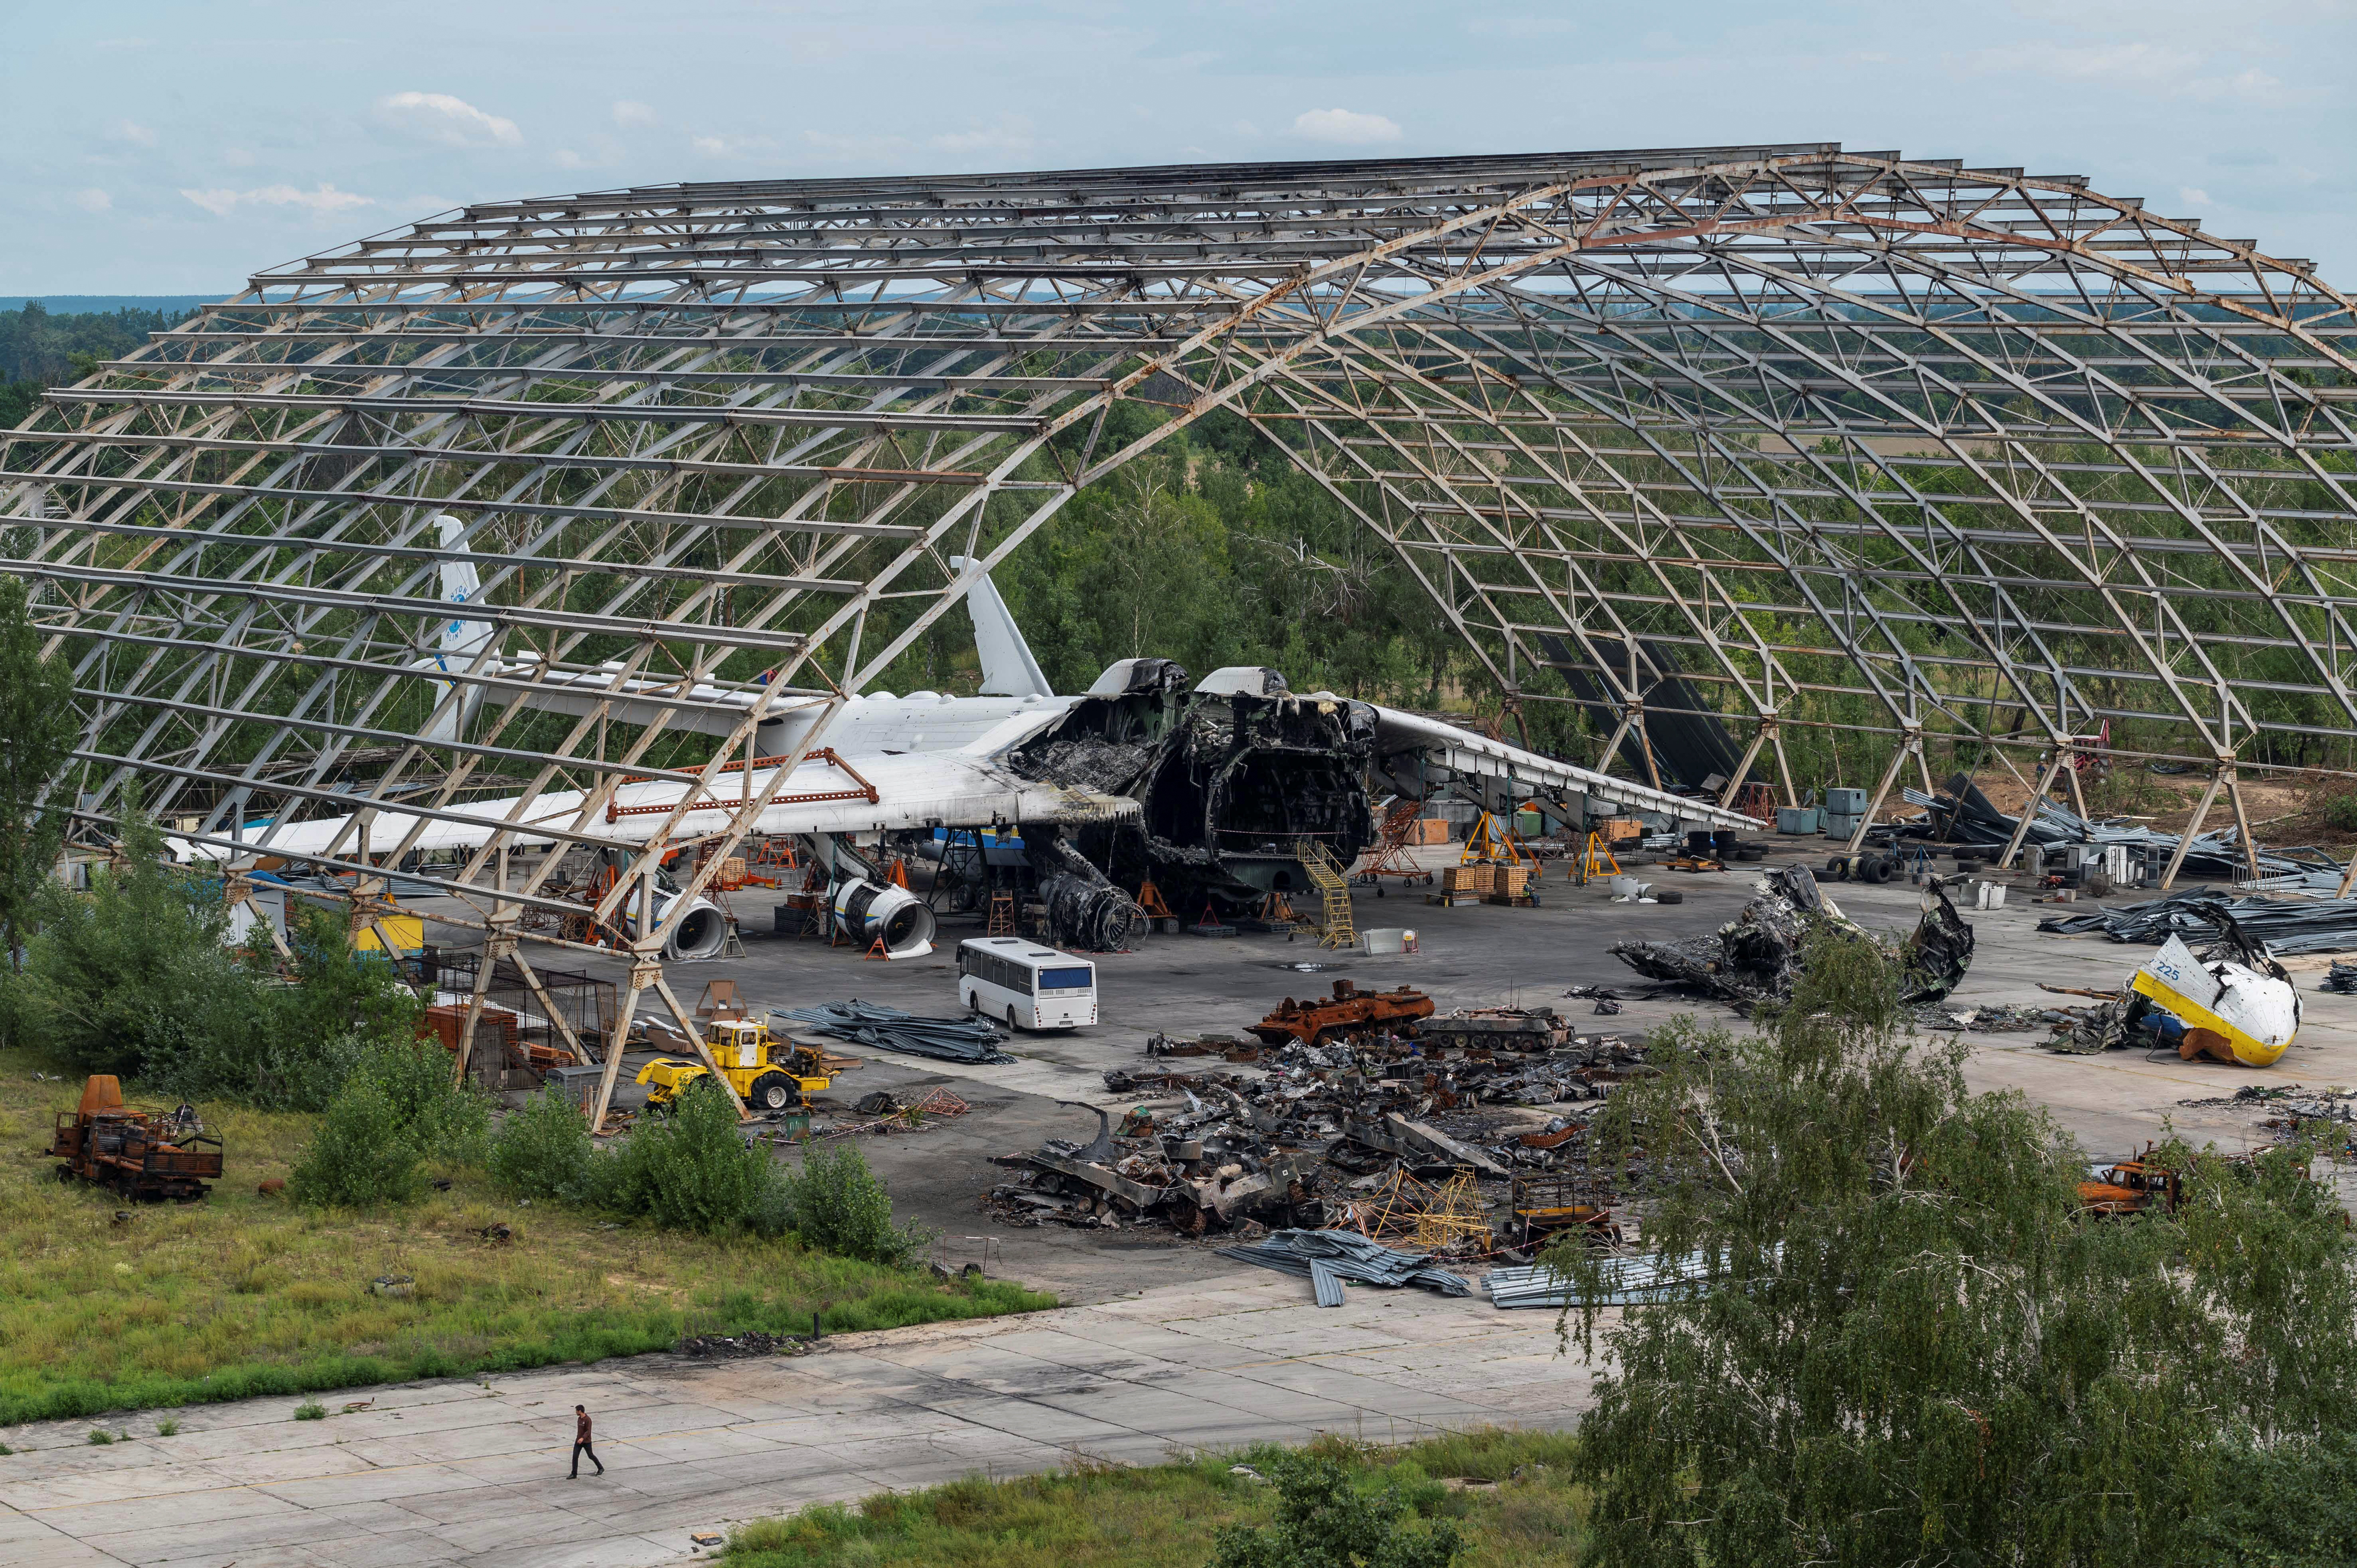 El avión fue destruido luego de una batalla de helicópteros cuando se encontraba en su hangar en el aeropuerto de Hostomel. (REUTERS/Viacheslav Ratynskyi)